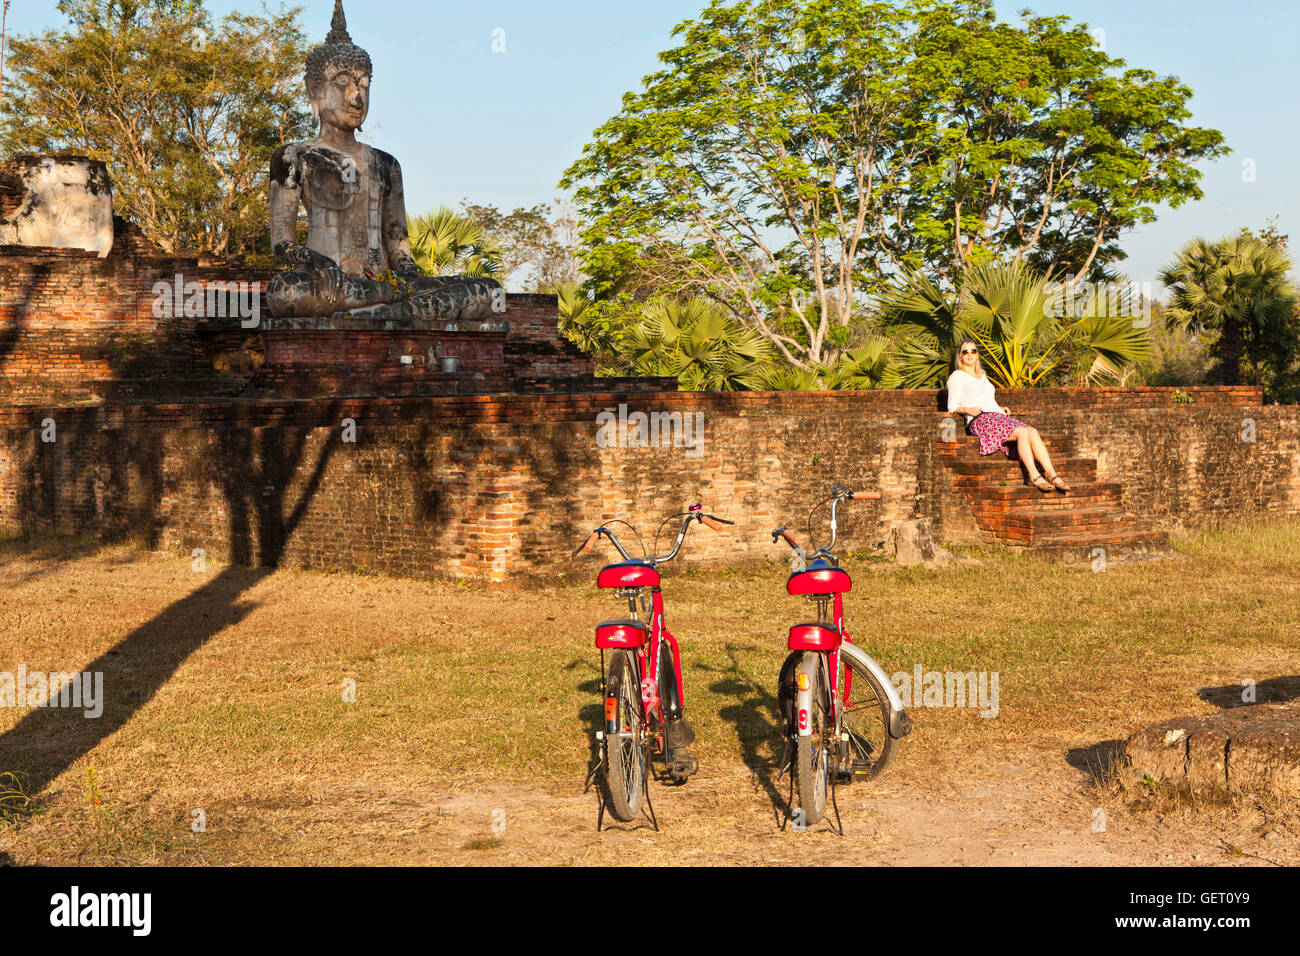 Un service de location de vélos garés ensemble à Wat Mae Chon dans le Parc National de Sukhothai. Banque D'Images